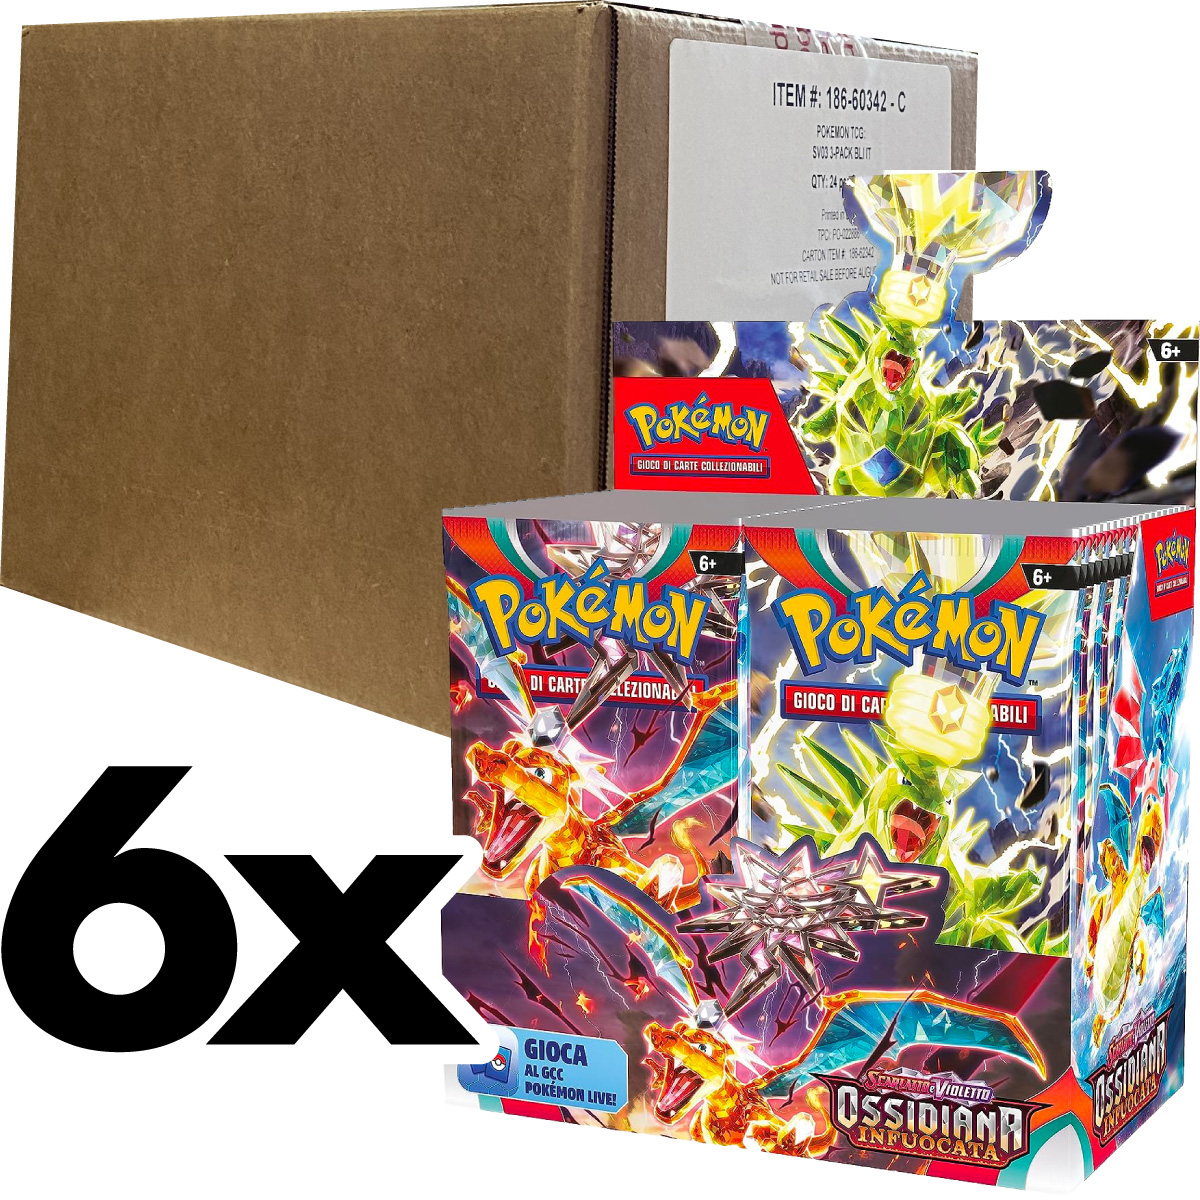 pokemon gcc - pokemon scarlatto e violetto ossidiana infuocata - case sigillato 6x box da 36 bustine (ita) - pk62340